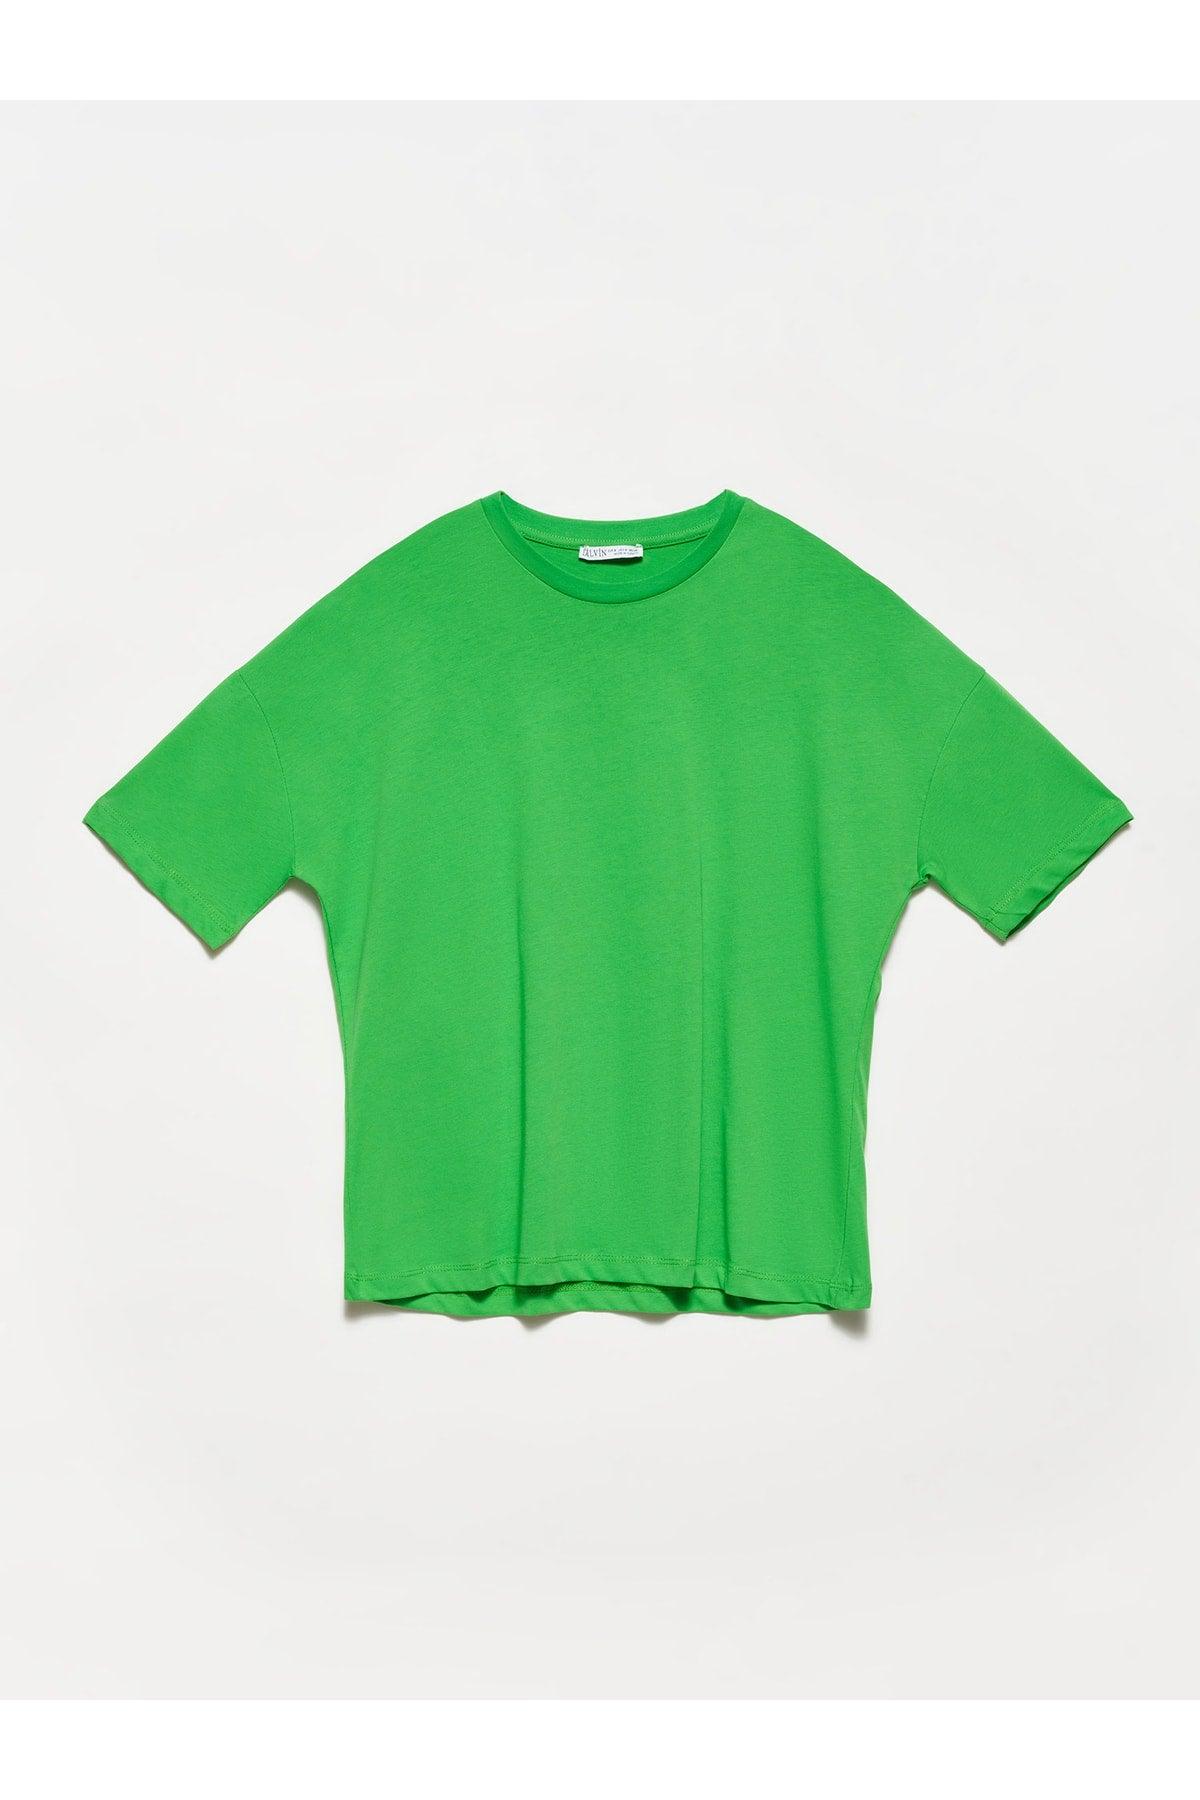 3683 Basic T-shirt-Light Green - Swordslife